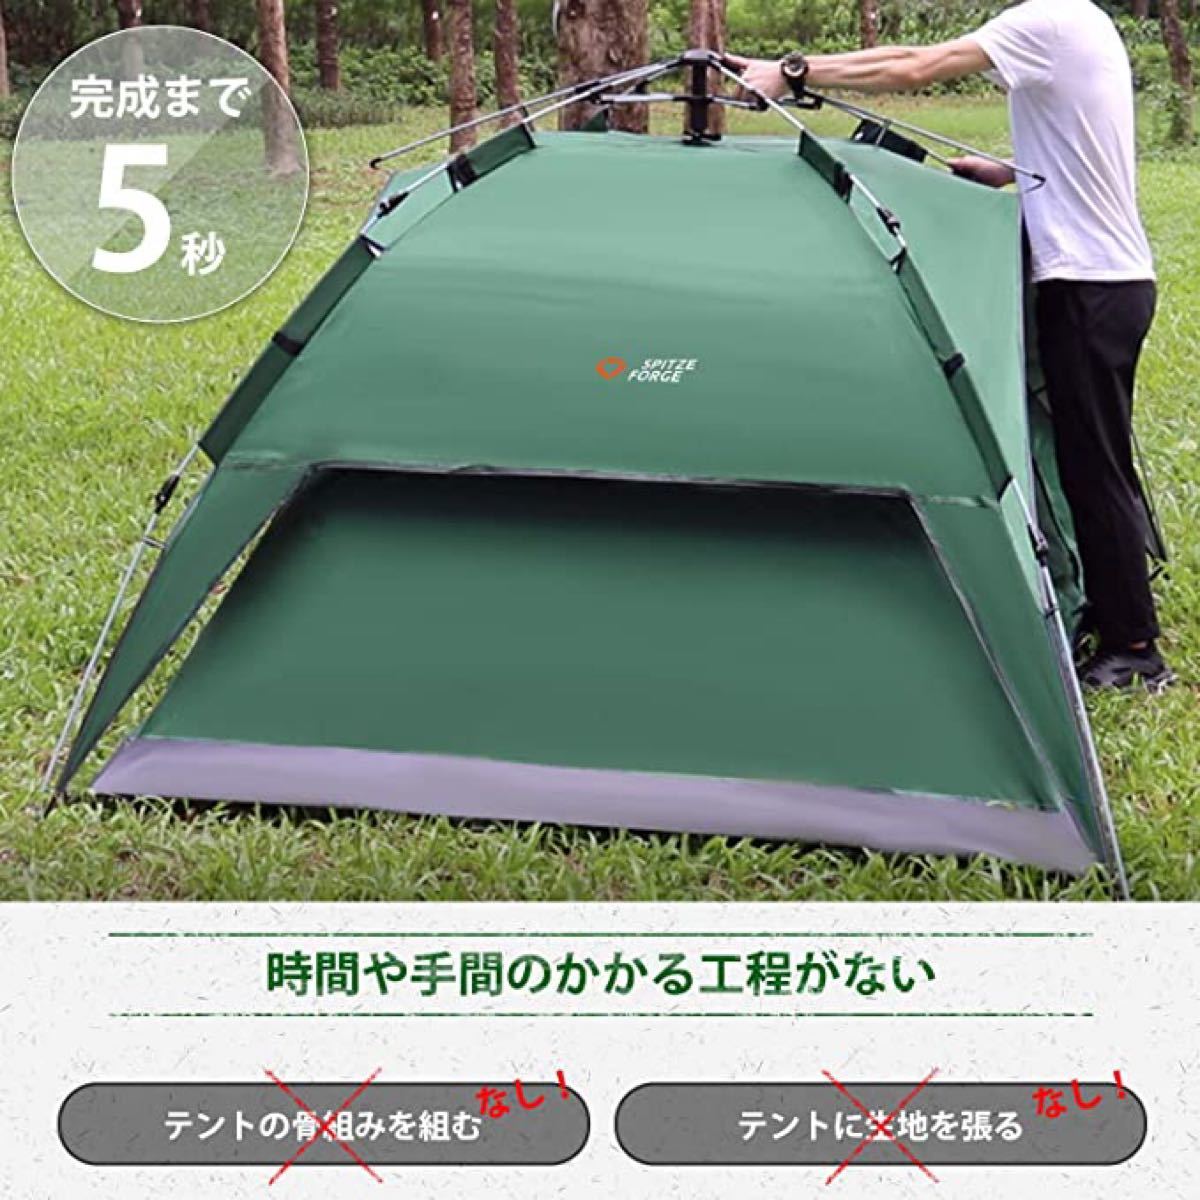 ワンタッチテント 2-3人用 2重層 キャンプ テント  サンシェード 設営簡単